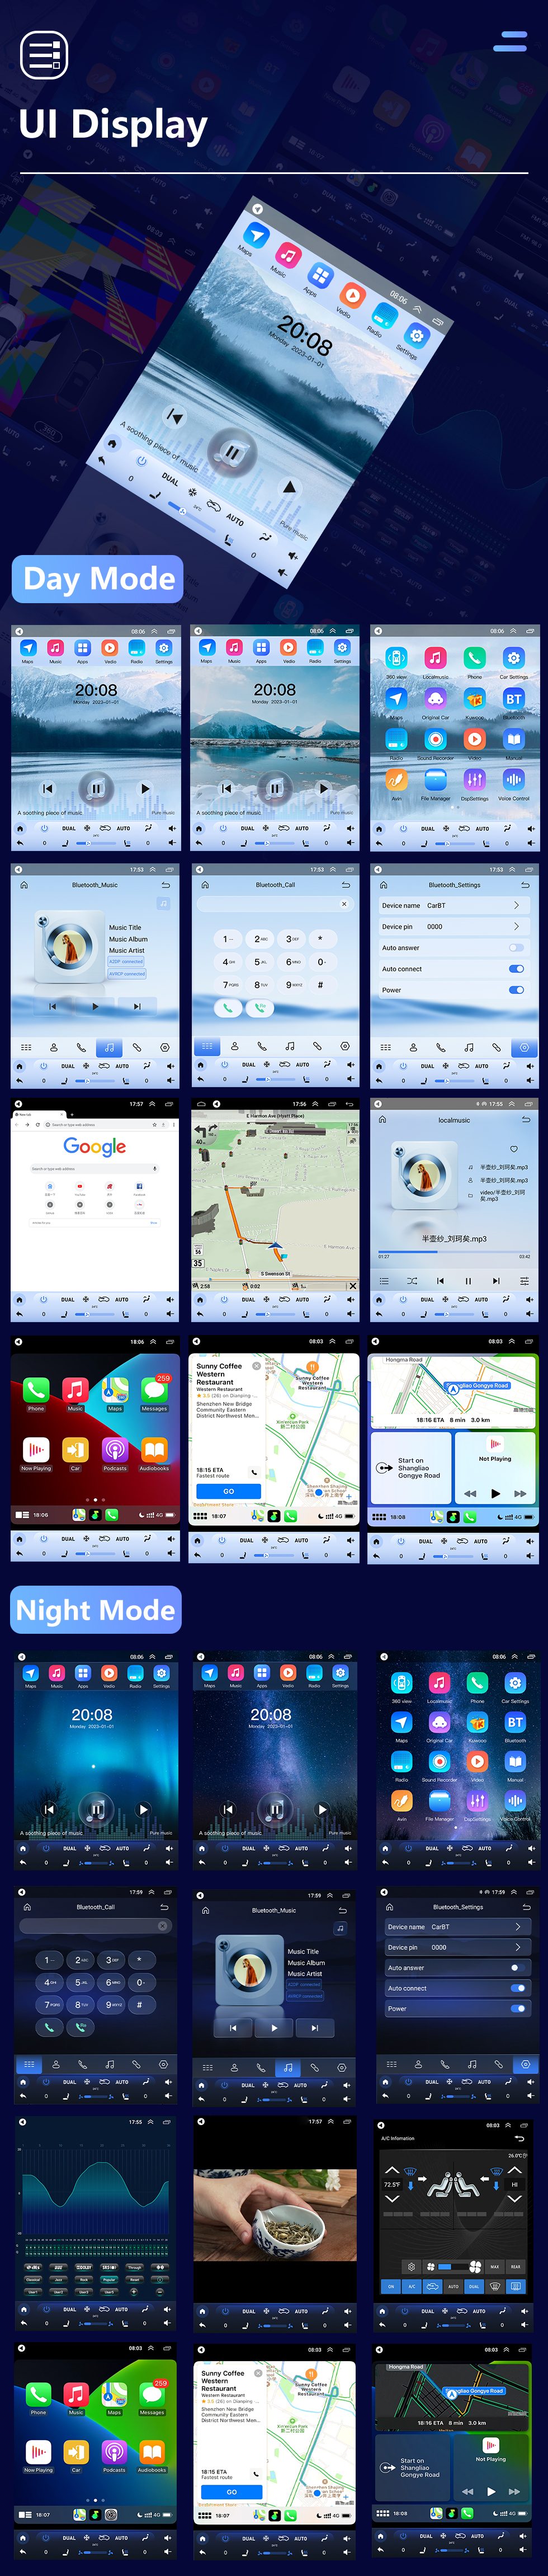 Seicane Android 10.0 9.7 pouces pour 2017 ZOTYE SR9 Radio avec système de navigation GPS à écran tactile HD prise en charge Bluetooth Carplay TPMS